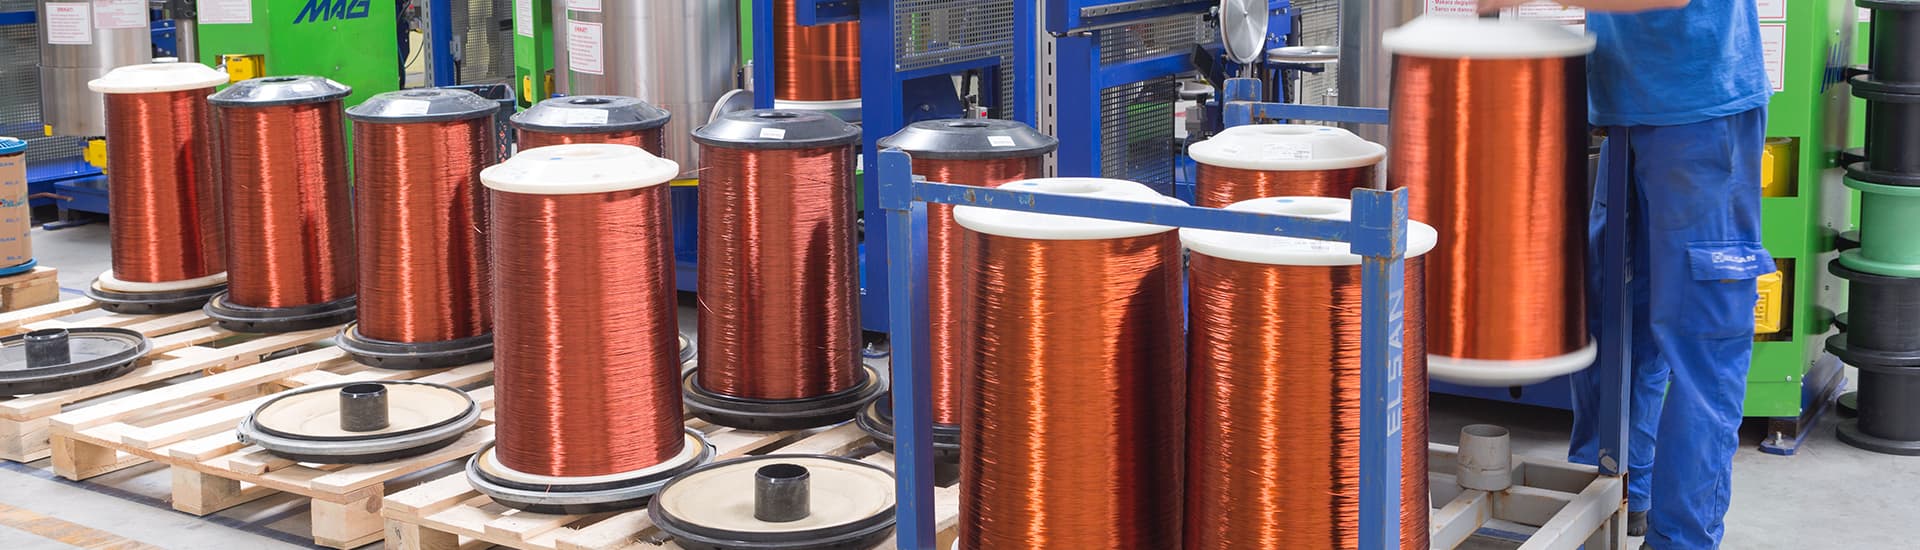 Aydem Enerji'nin ilk şirketi olan Elsan'ın ürettiği bakır tel ve alüminyum emanye bobinlerin temsili görselidir.